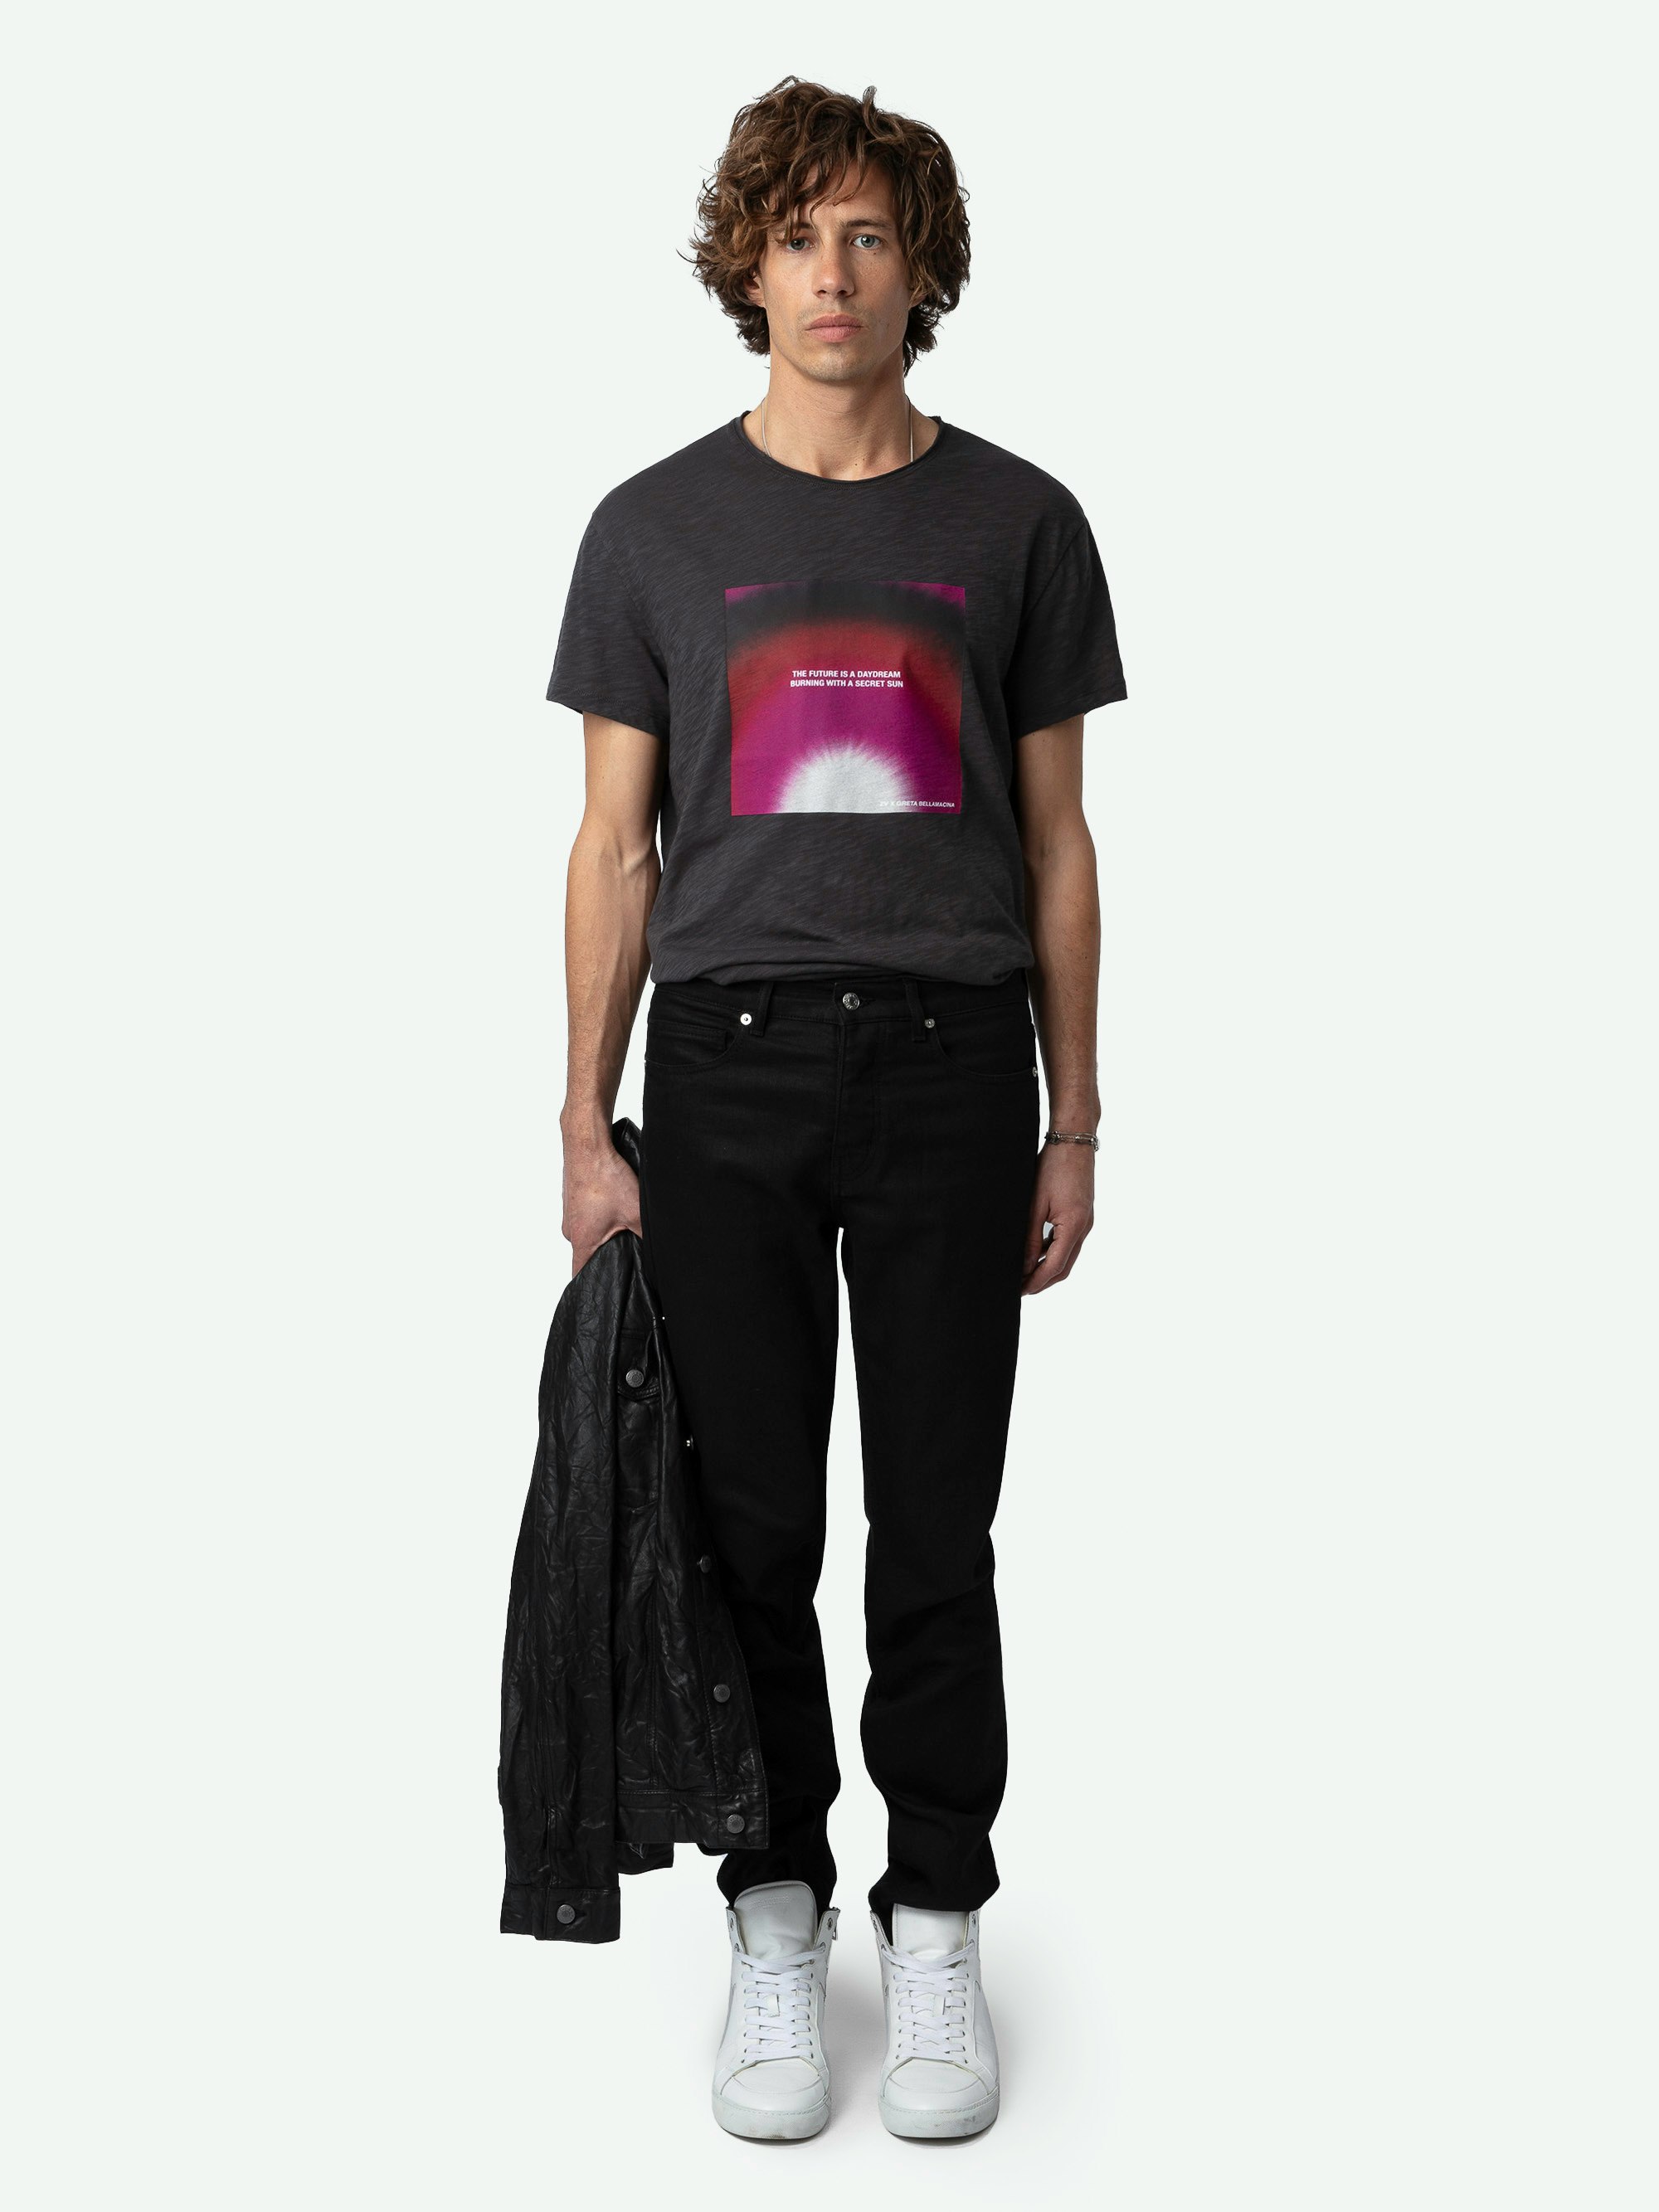 T-shirt Toby Photoprint - T-shirt in cotone biologico fiammata a maniche corte con stampa fotografica e poesia Greta sul davanti.